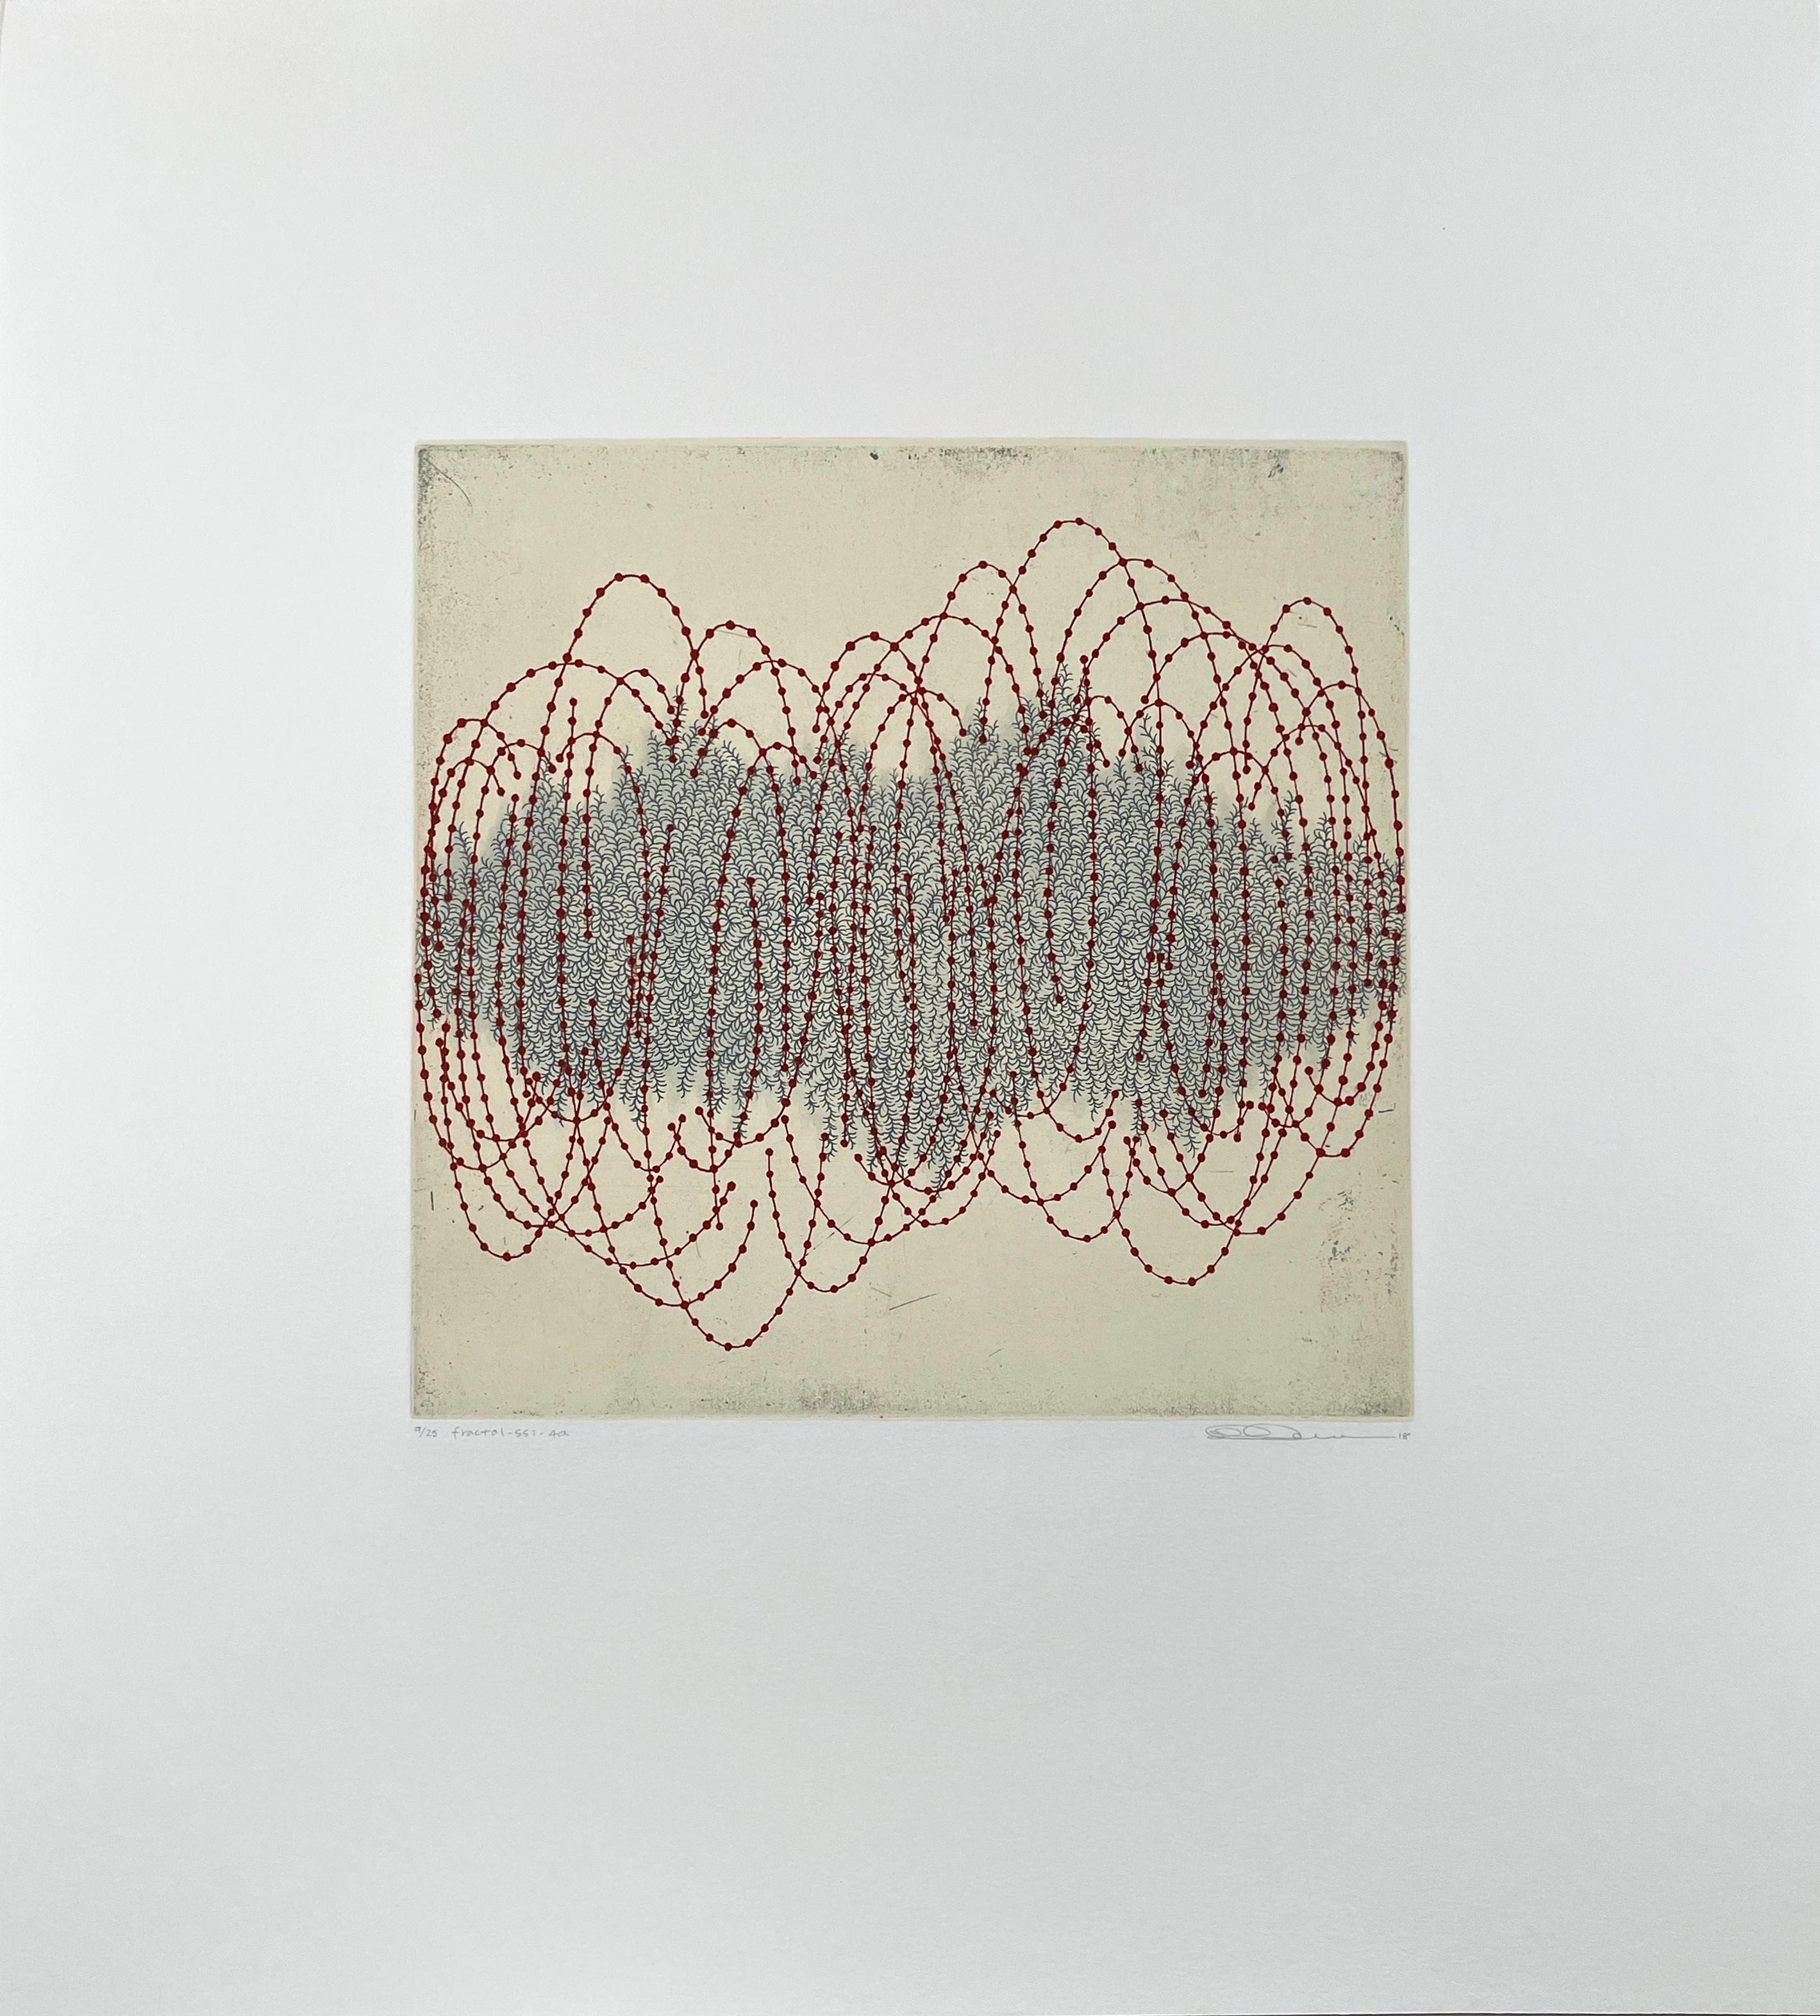 fractal-ssi-4a - Print by Seiko Tachibana